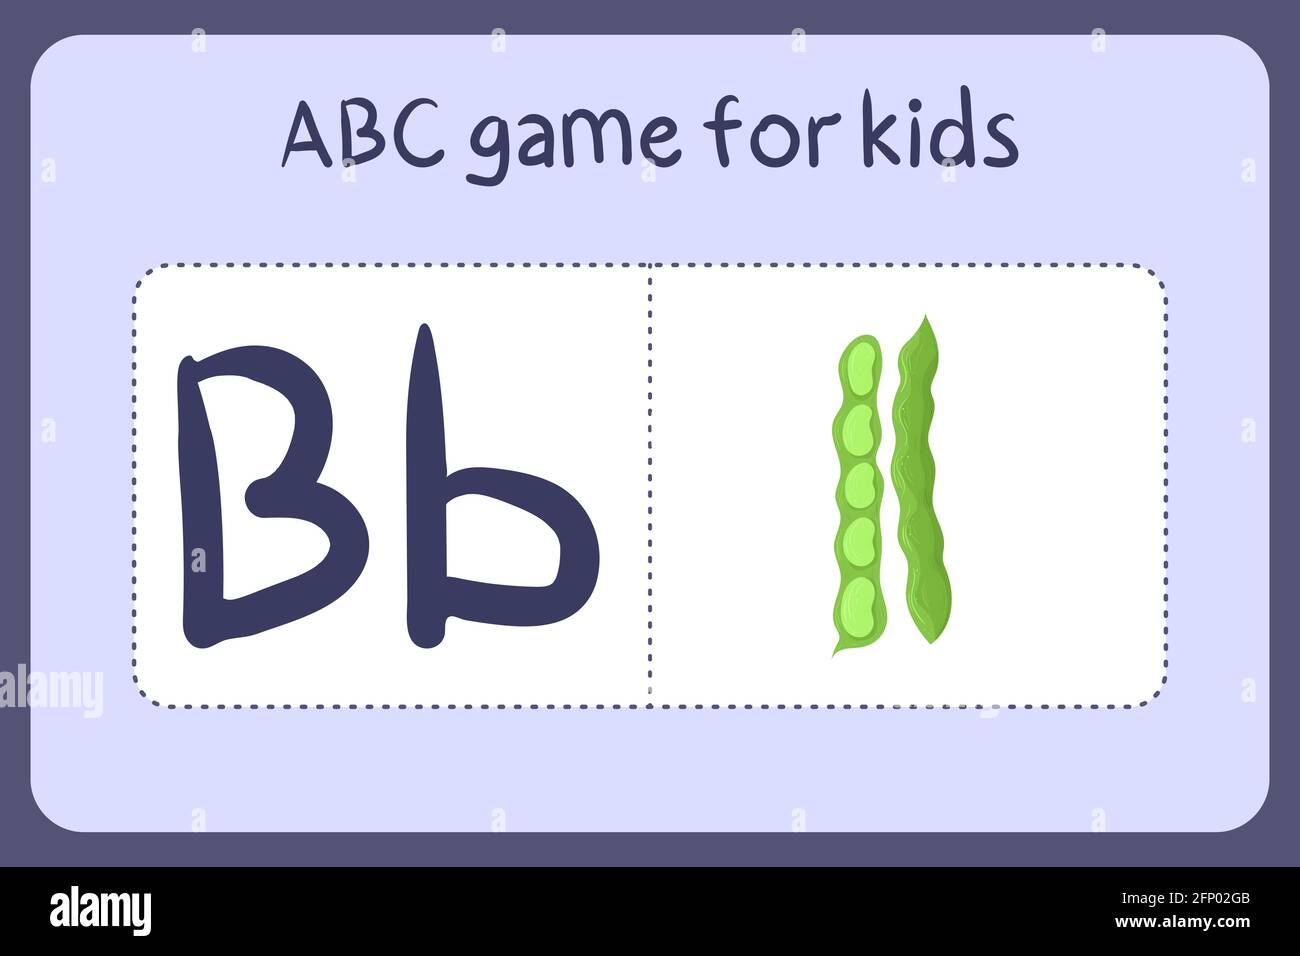 Mini-jeux d'alphabet pour enfants de style dessin animé avec lettre B - haricot. Illustration vectorielle pour la conception de jeux - couper et jouer. Apprenez l'abc avec des cartes flash de fruits et légumes. Illustration de Vecteur